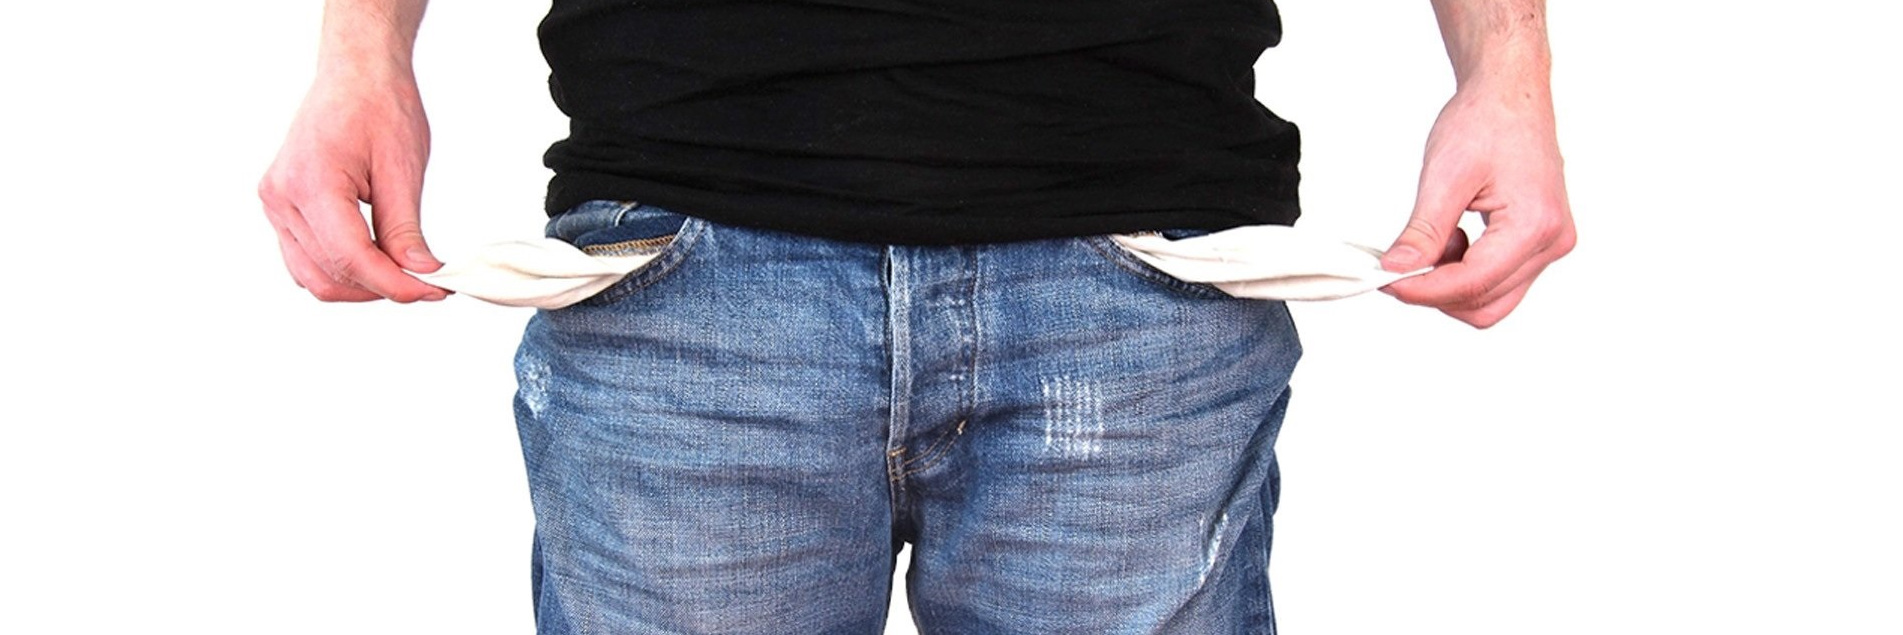 Bildausschnitt Mann mit Jeanstaschen nach außen gezogen